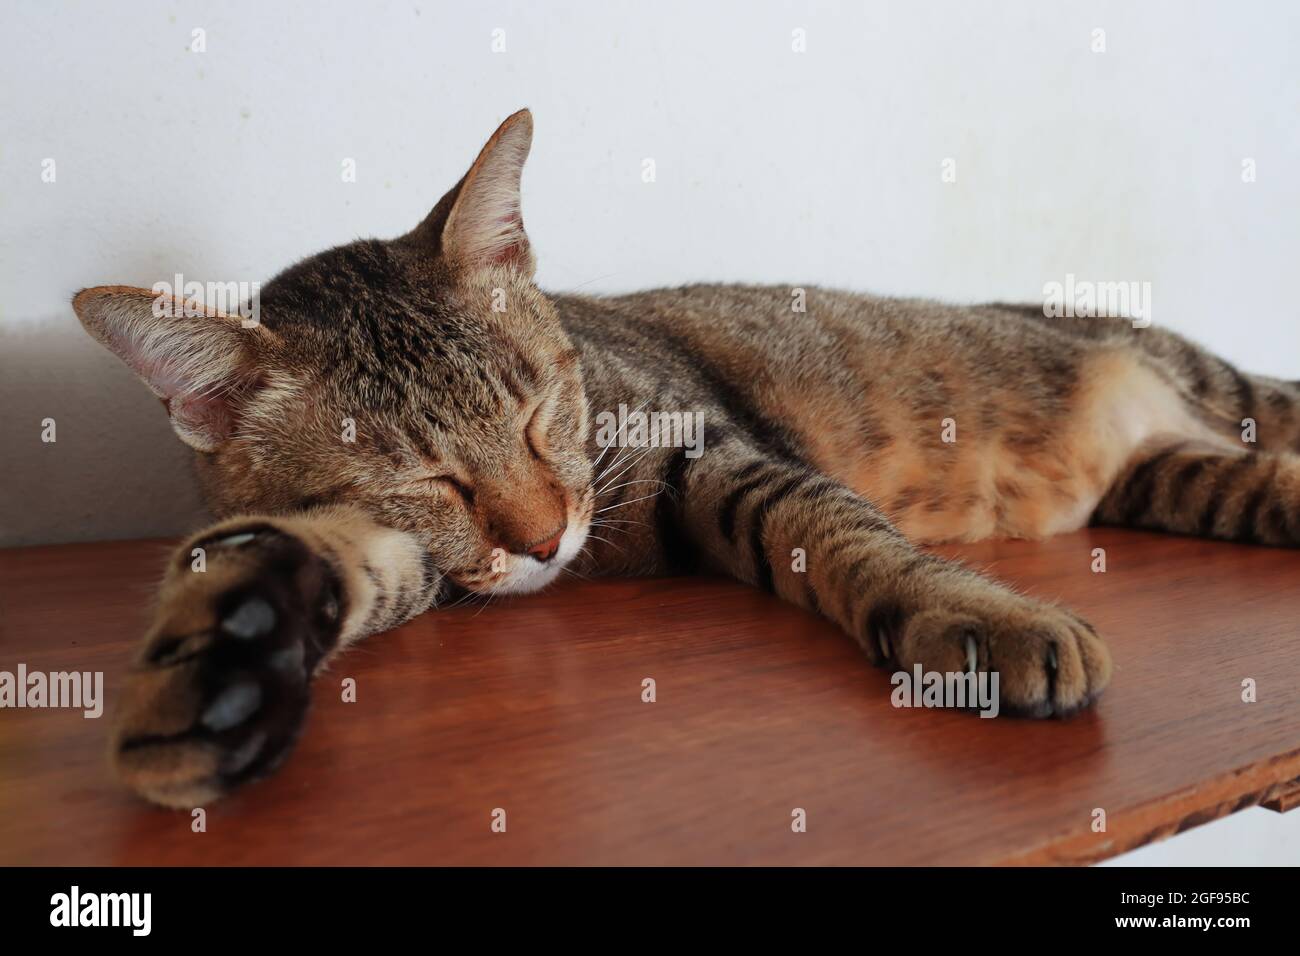 Portrait de chat de tabby de sexe masculin adorable, reposant et dormant confortablement sur l'étagère. Banque D'Images